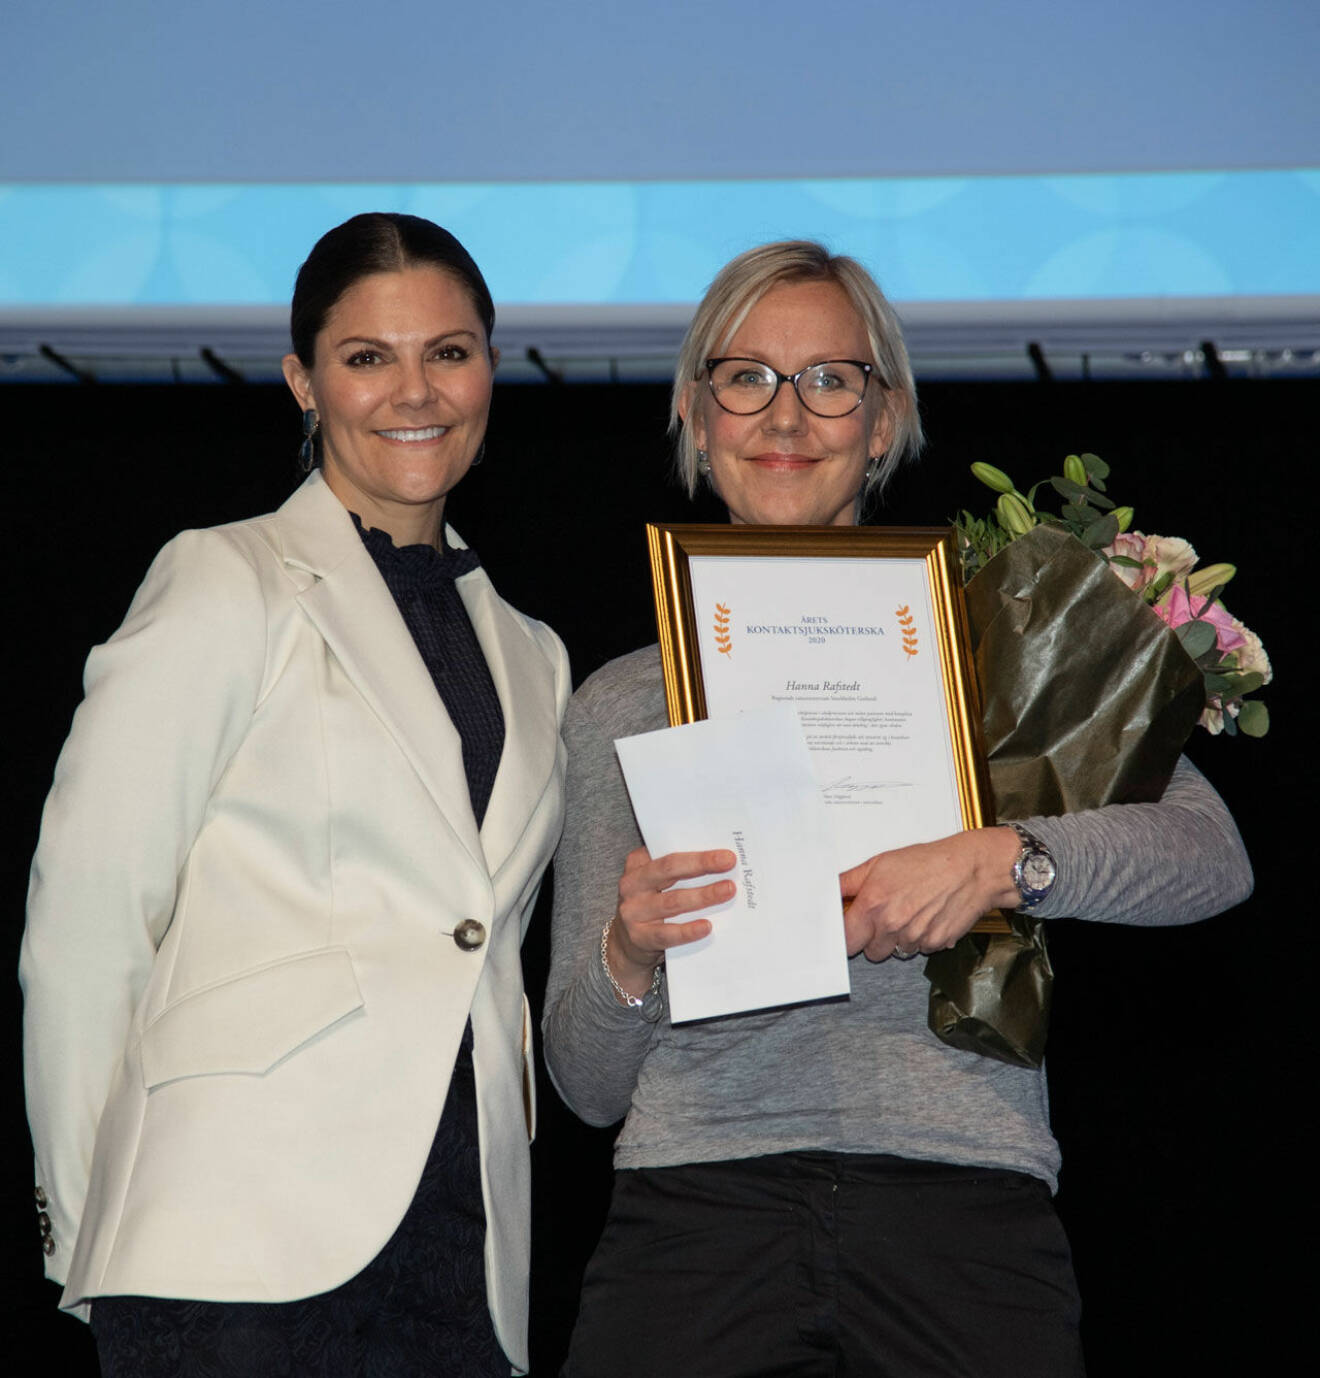 Kronprinsessan Victoria med Hanna Rafstedt som utsågs till Årets Kontaktsjuksköterska 2020 tillsammans med Anna Watz. 